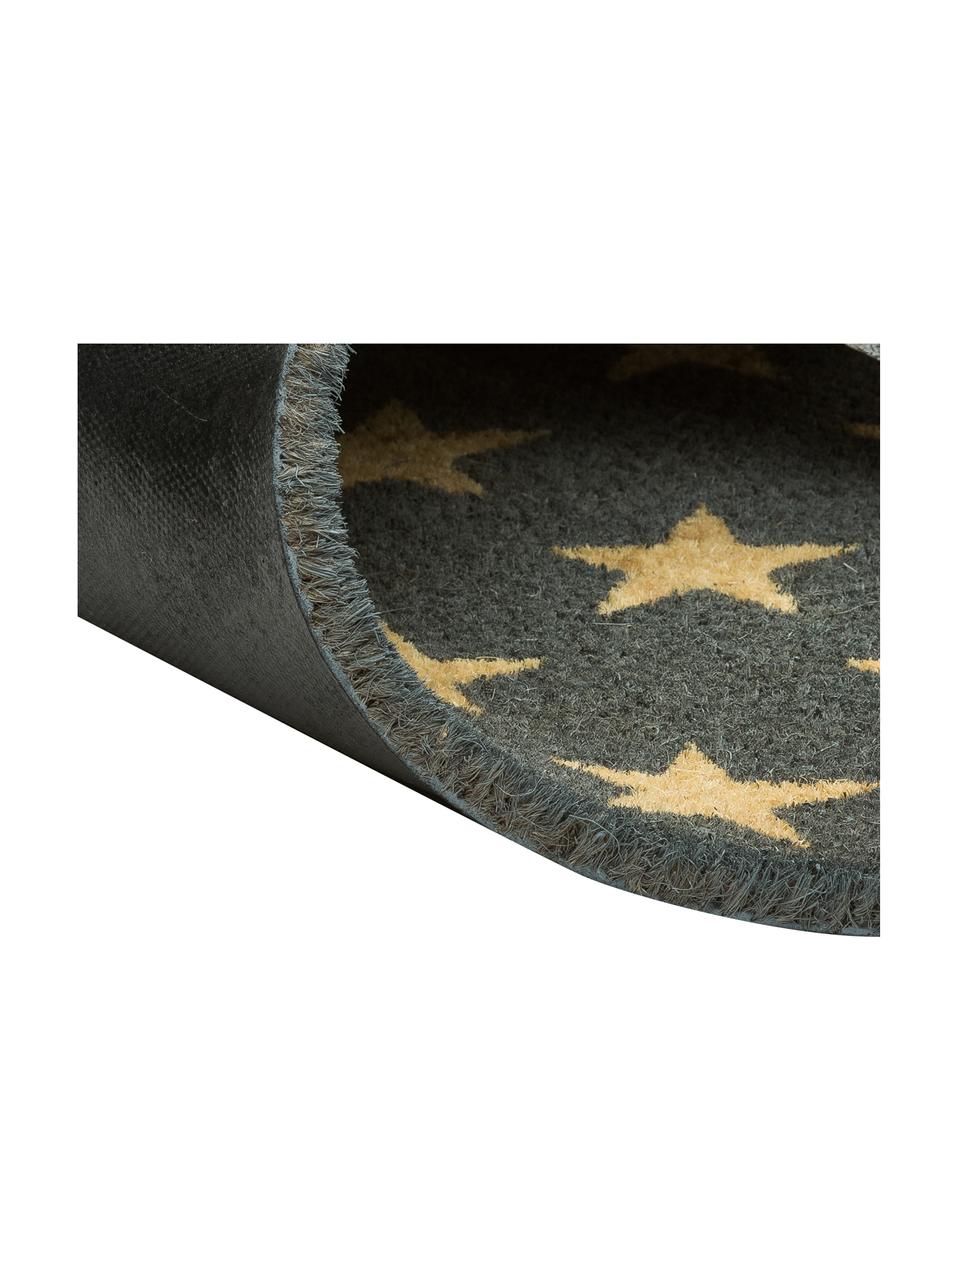 Fußmatte Fresh Stars, Oberseite: 100 % Kokosfaser, Unterseite: Kunststoff, Beige, Grau, 46 x 76 cm